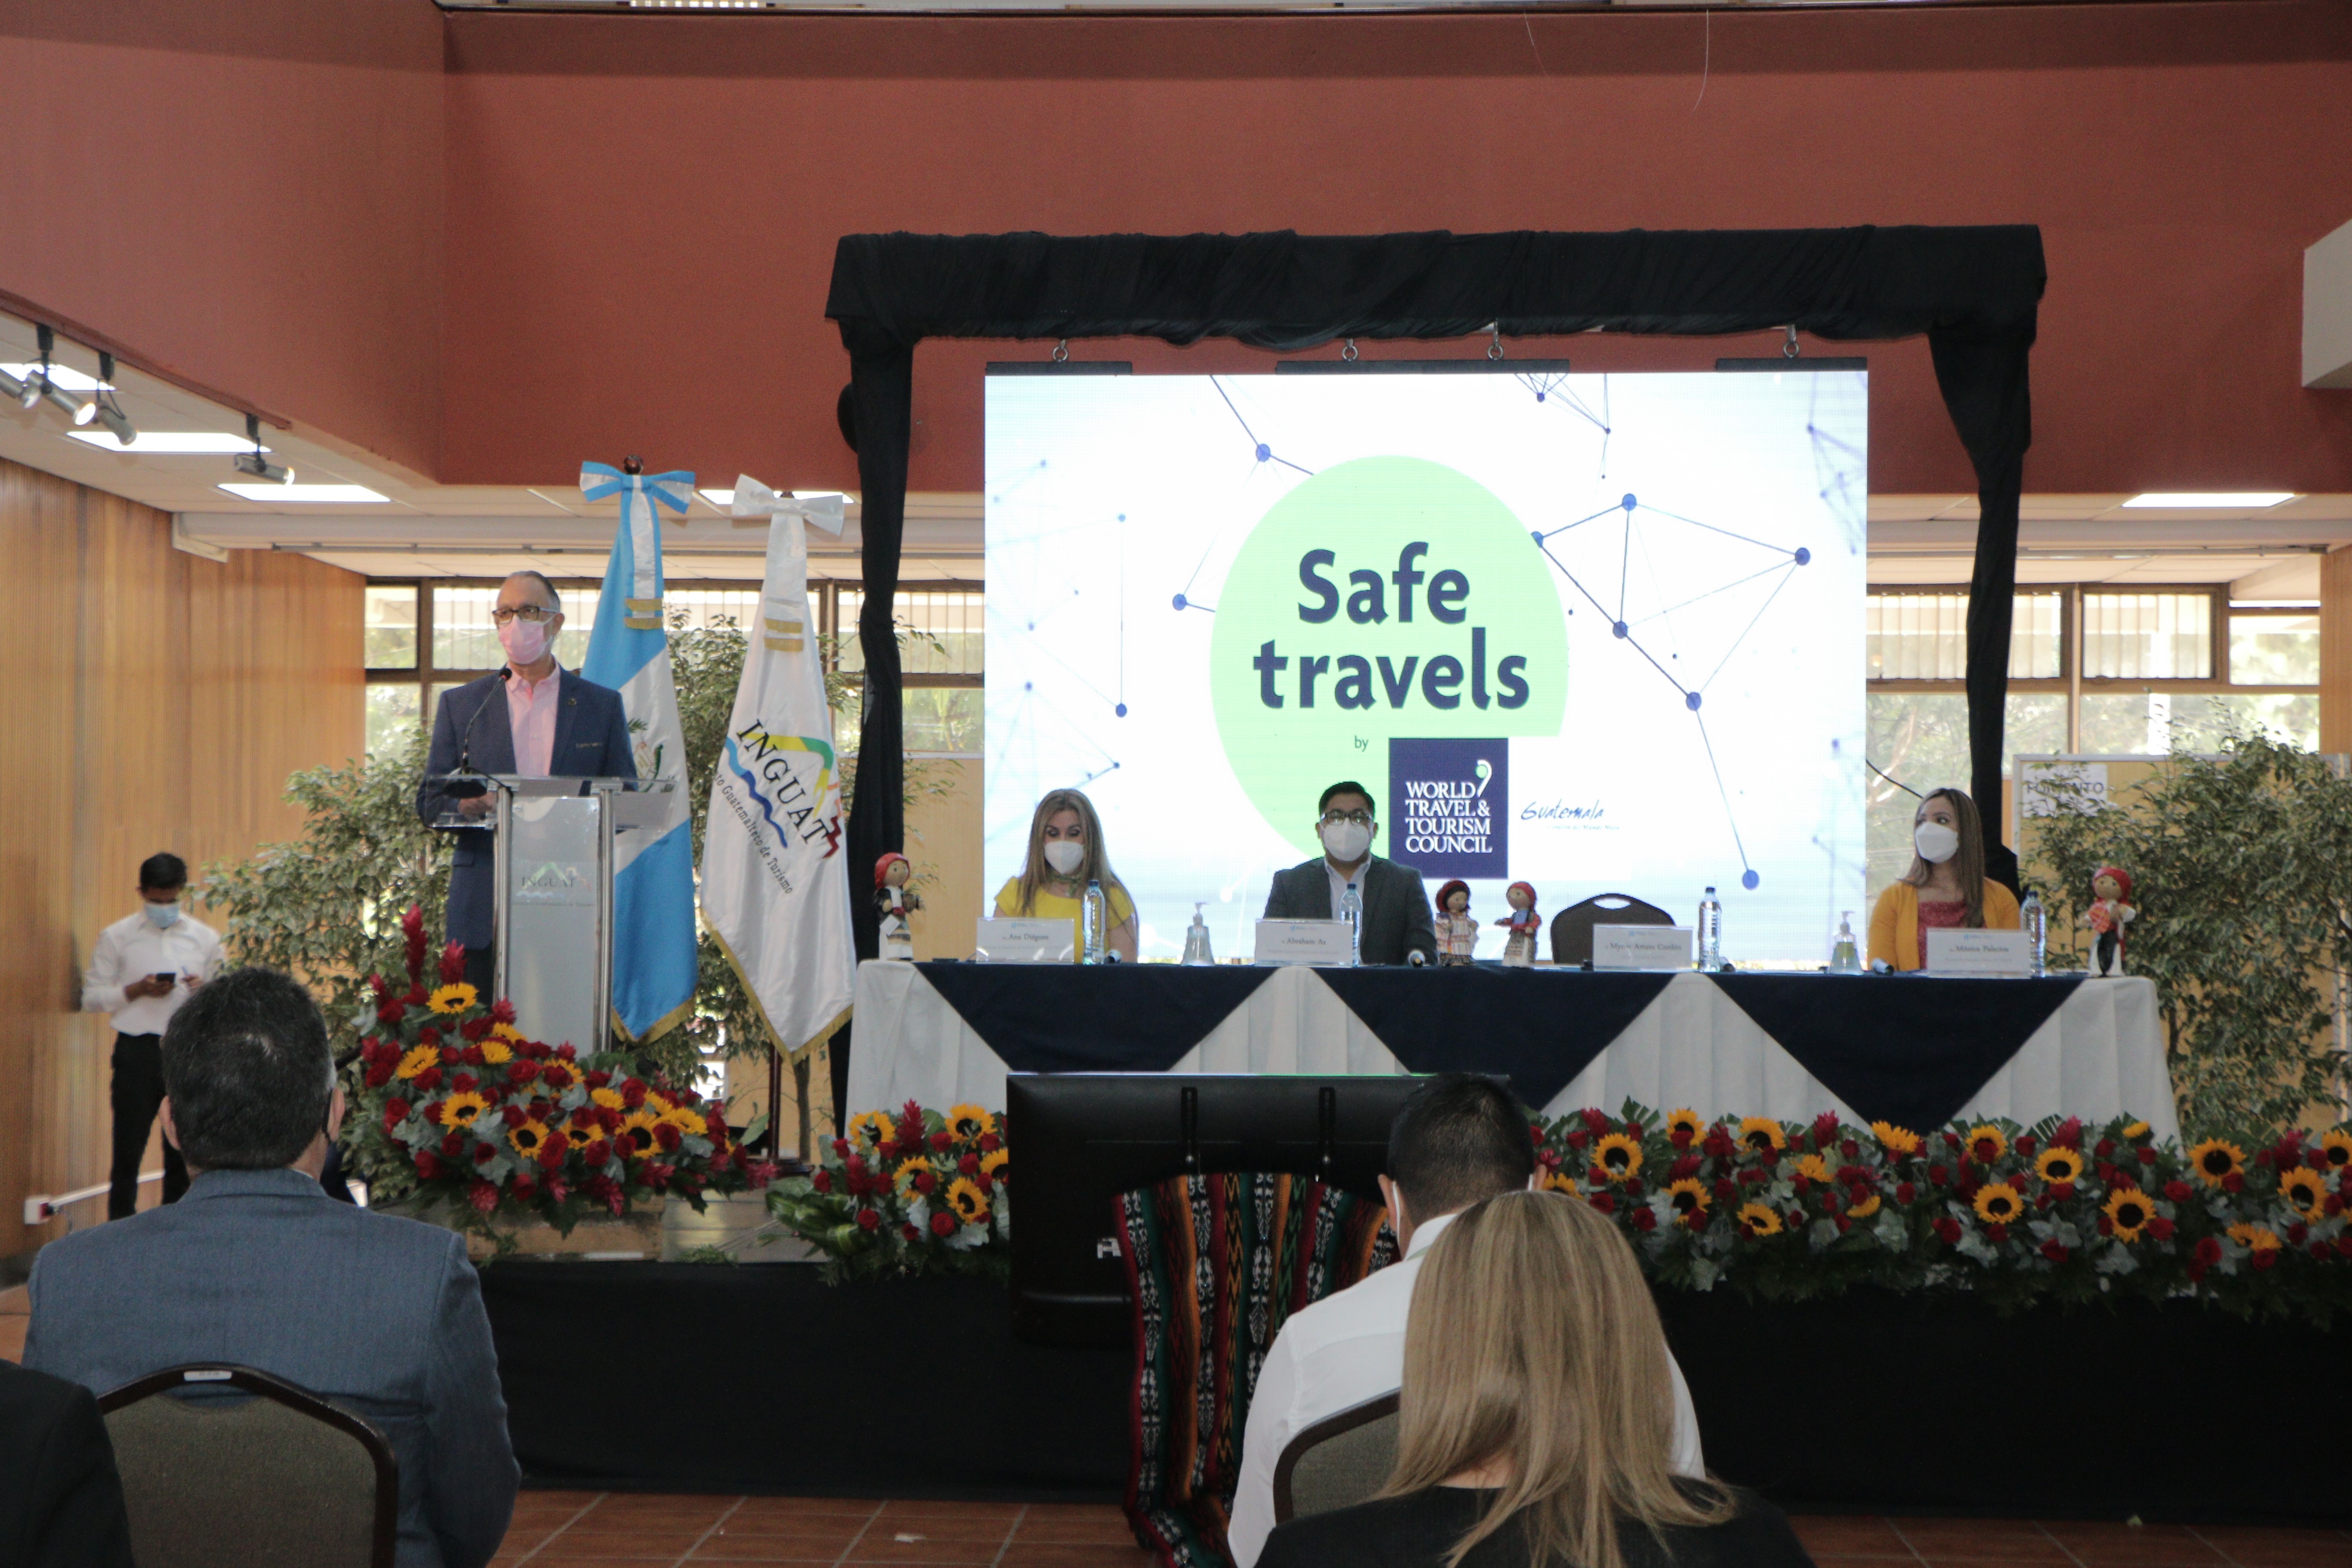 Los establecimientos de servicio turístico y restaurantes pueden prepararse para obtener los Sellos de Bioseguridad y Safe Travel sobre buenas prácticas para evitar contagios por coronavirus. (Foto, Prensa Libre: Inguat).